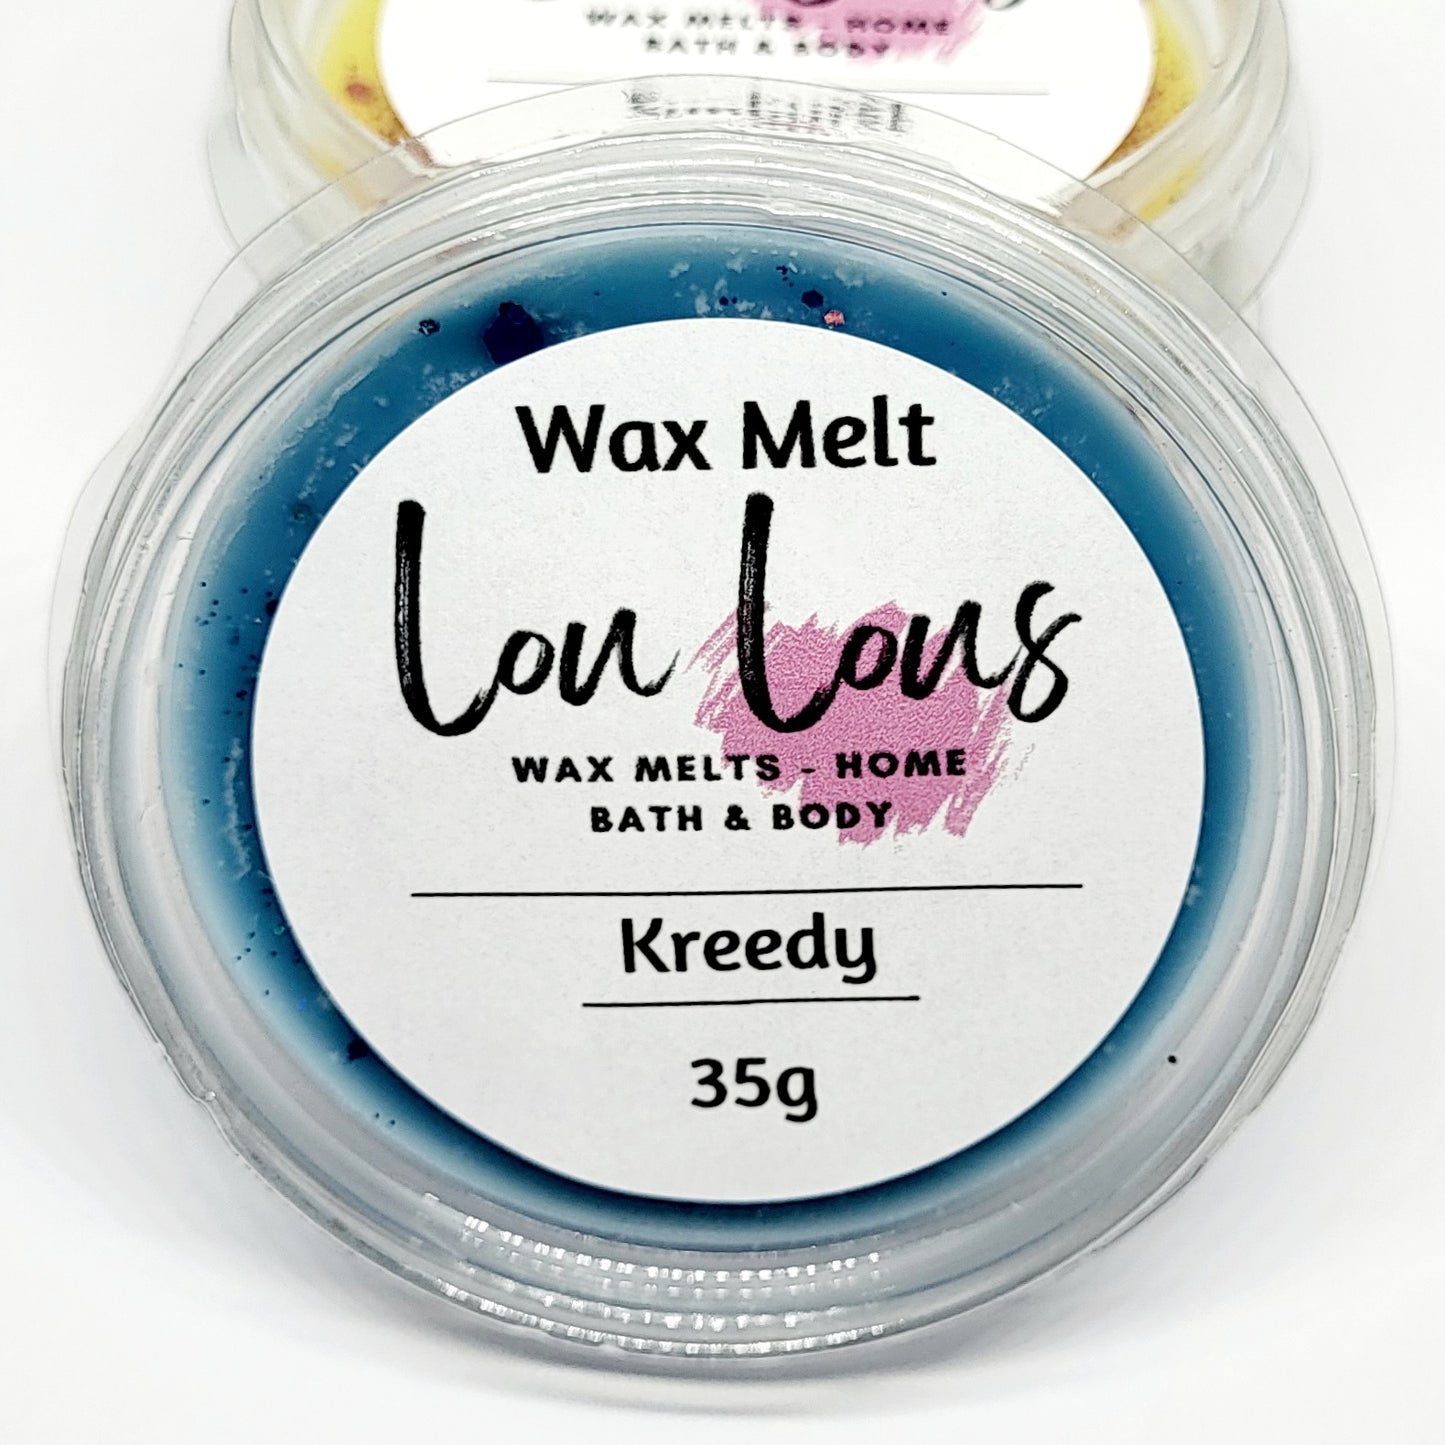 Kreedy Wax Melt Pot